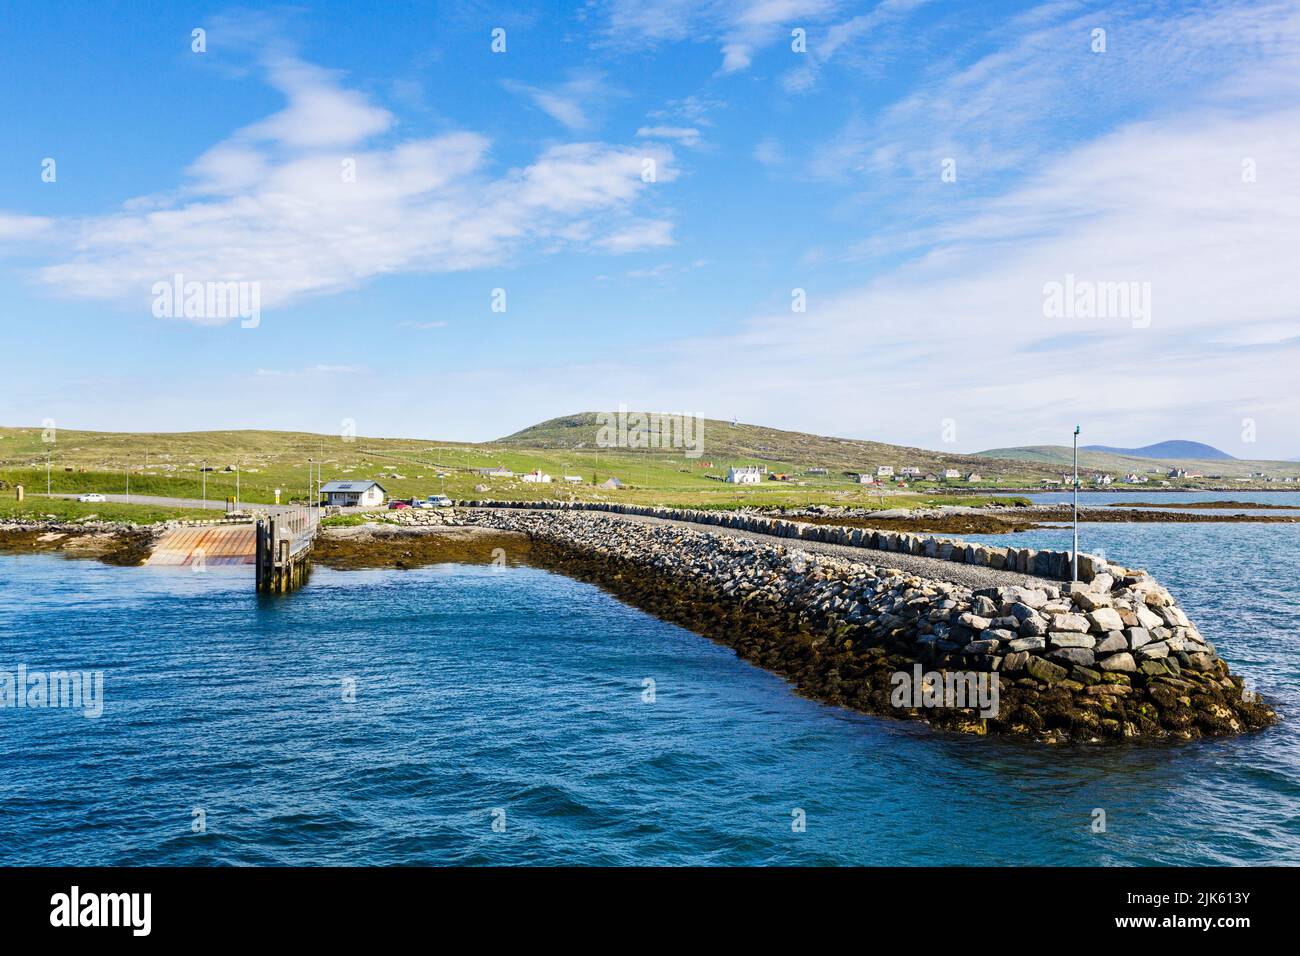 Offshore-Blick zum ferry terminal und Steg in Borve, Berneray Insel, äußeren Hebriden, Western Isles, Schottland, UK, Großbritannien Stockfoto